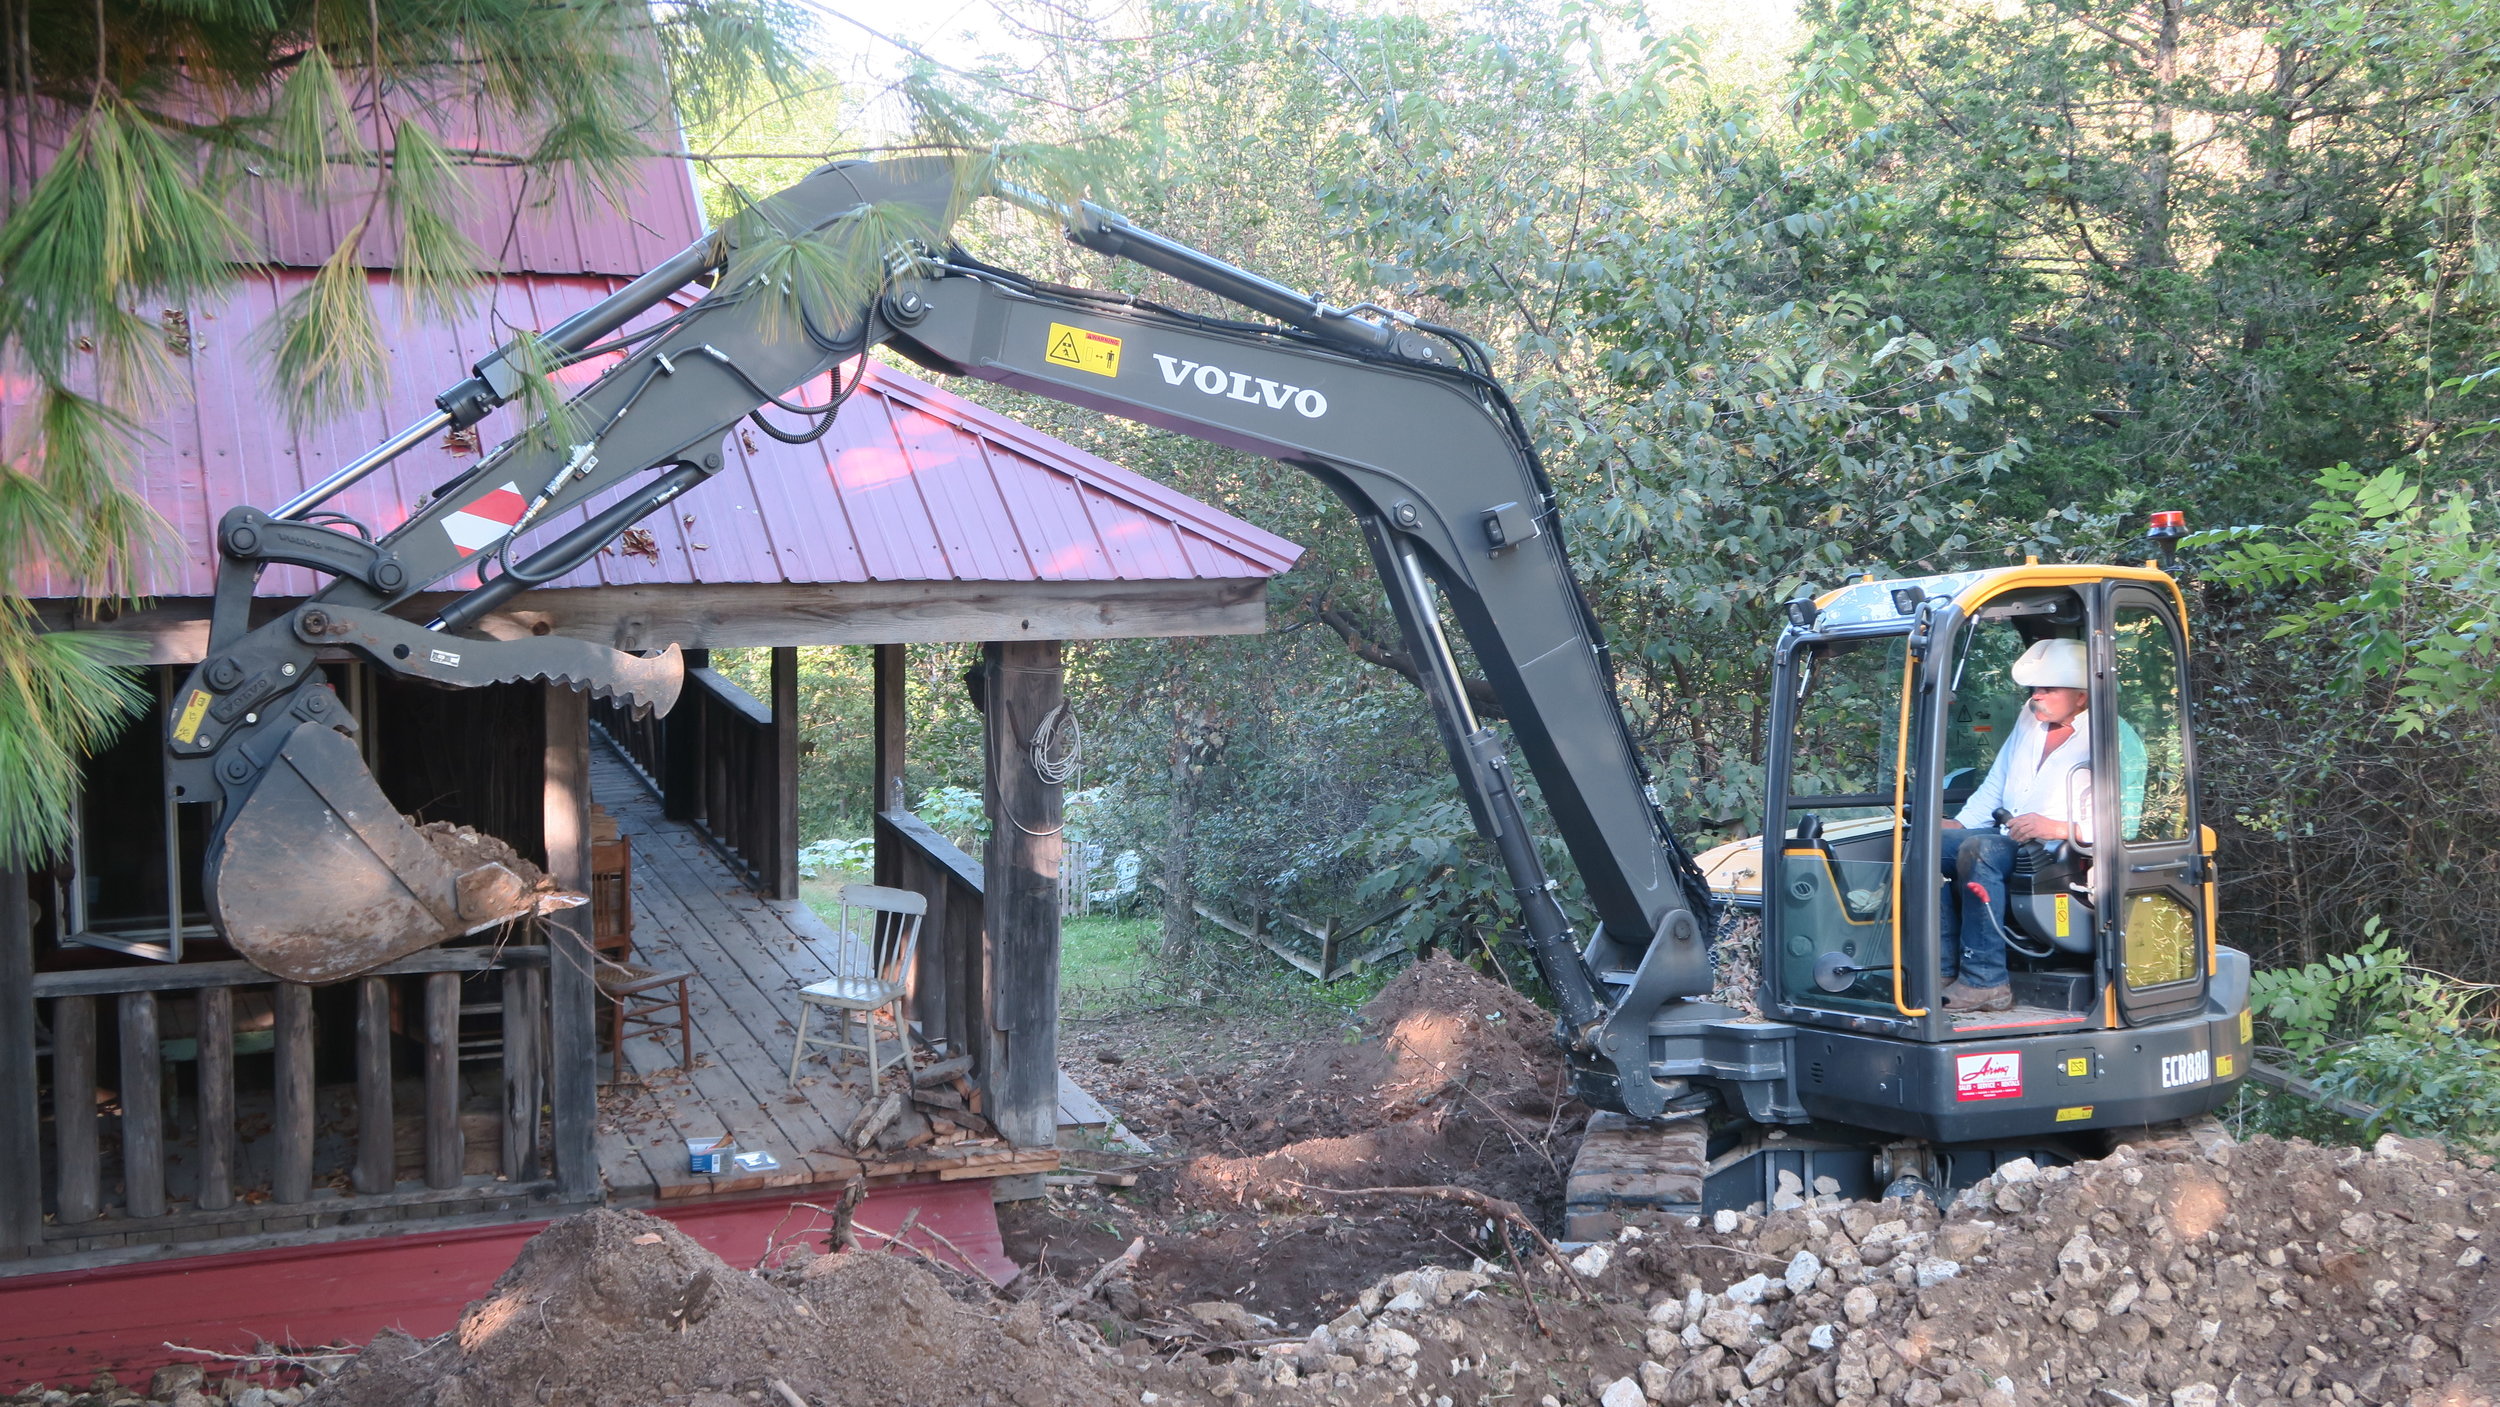  Excavation in progress. Photo by Natalie Munio 